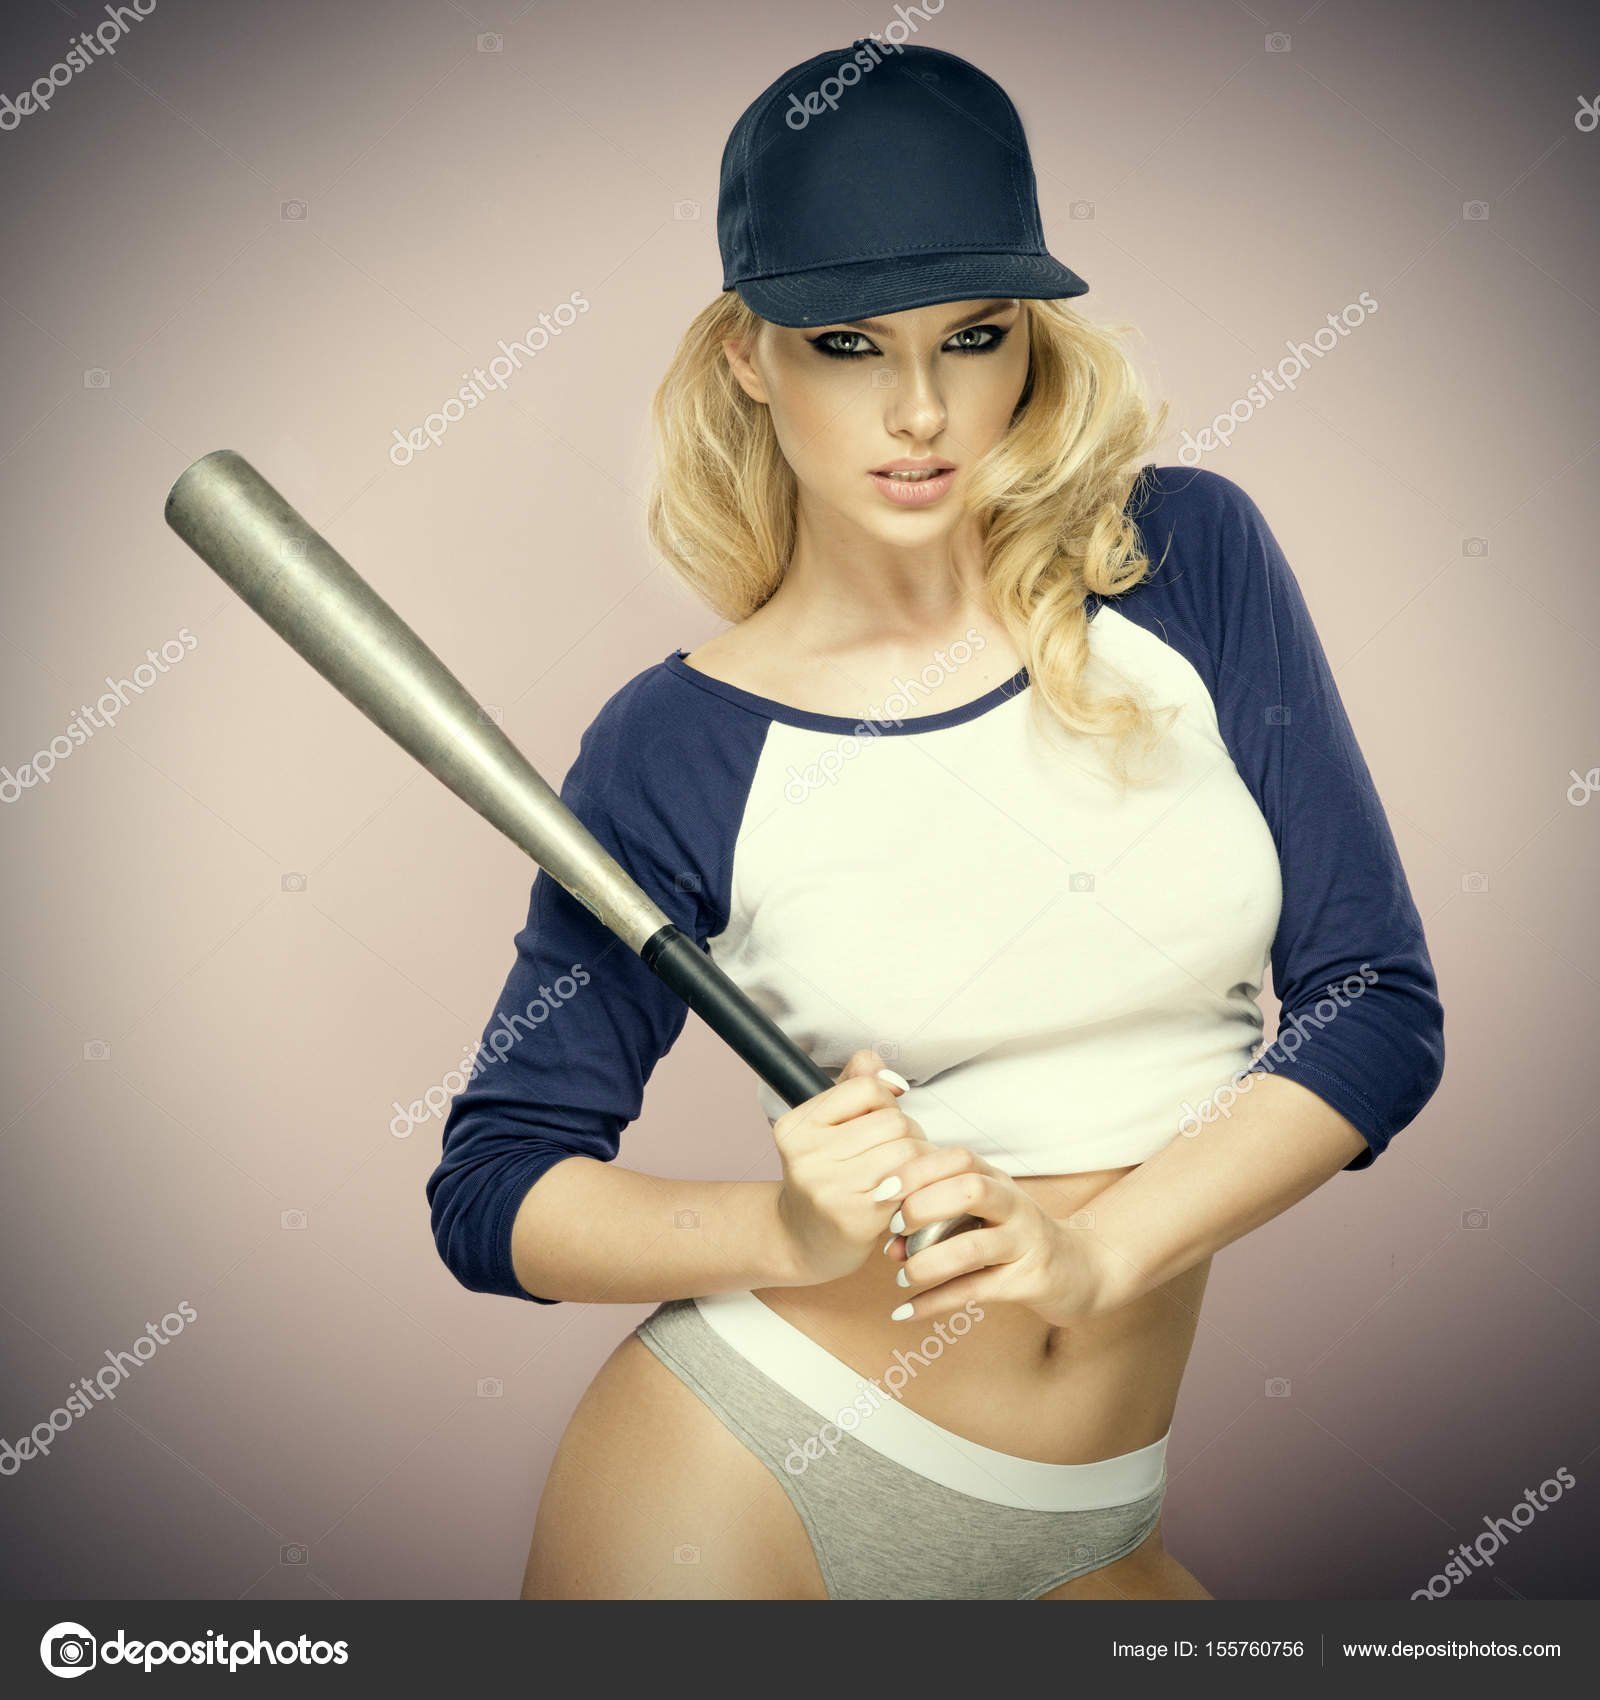 First D. reccomend Girl swinging a baseball bat